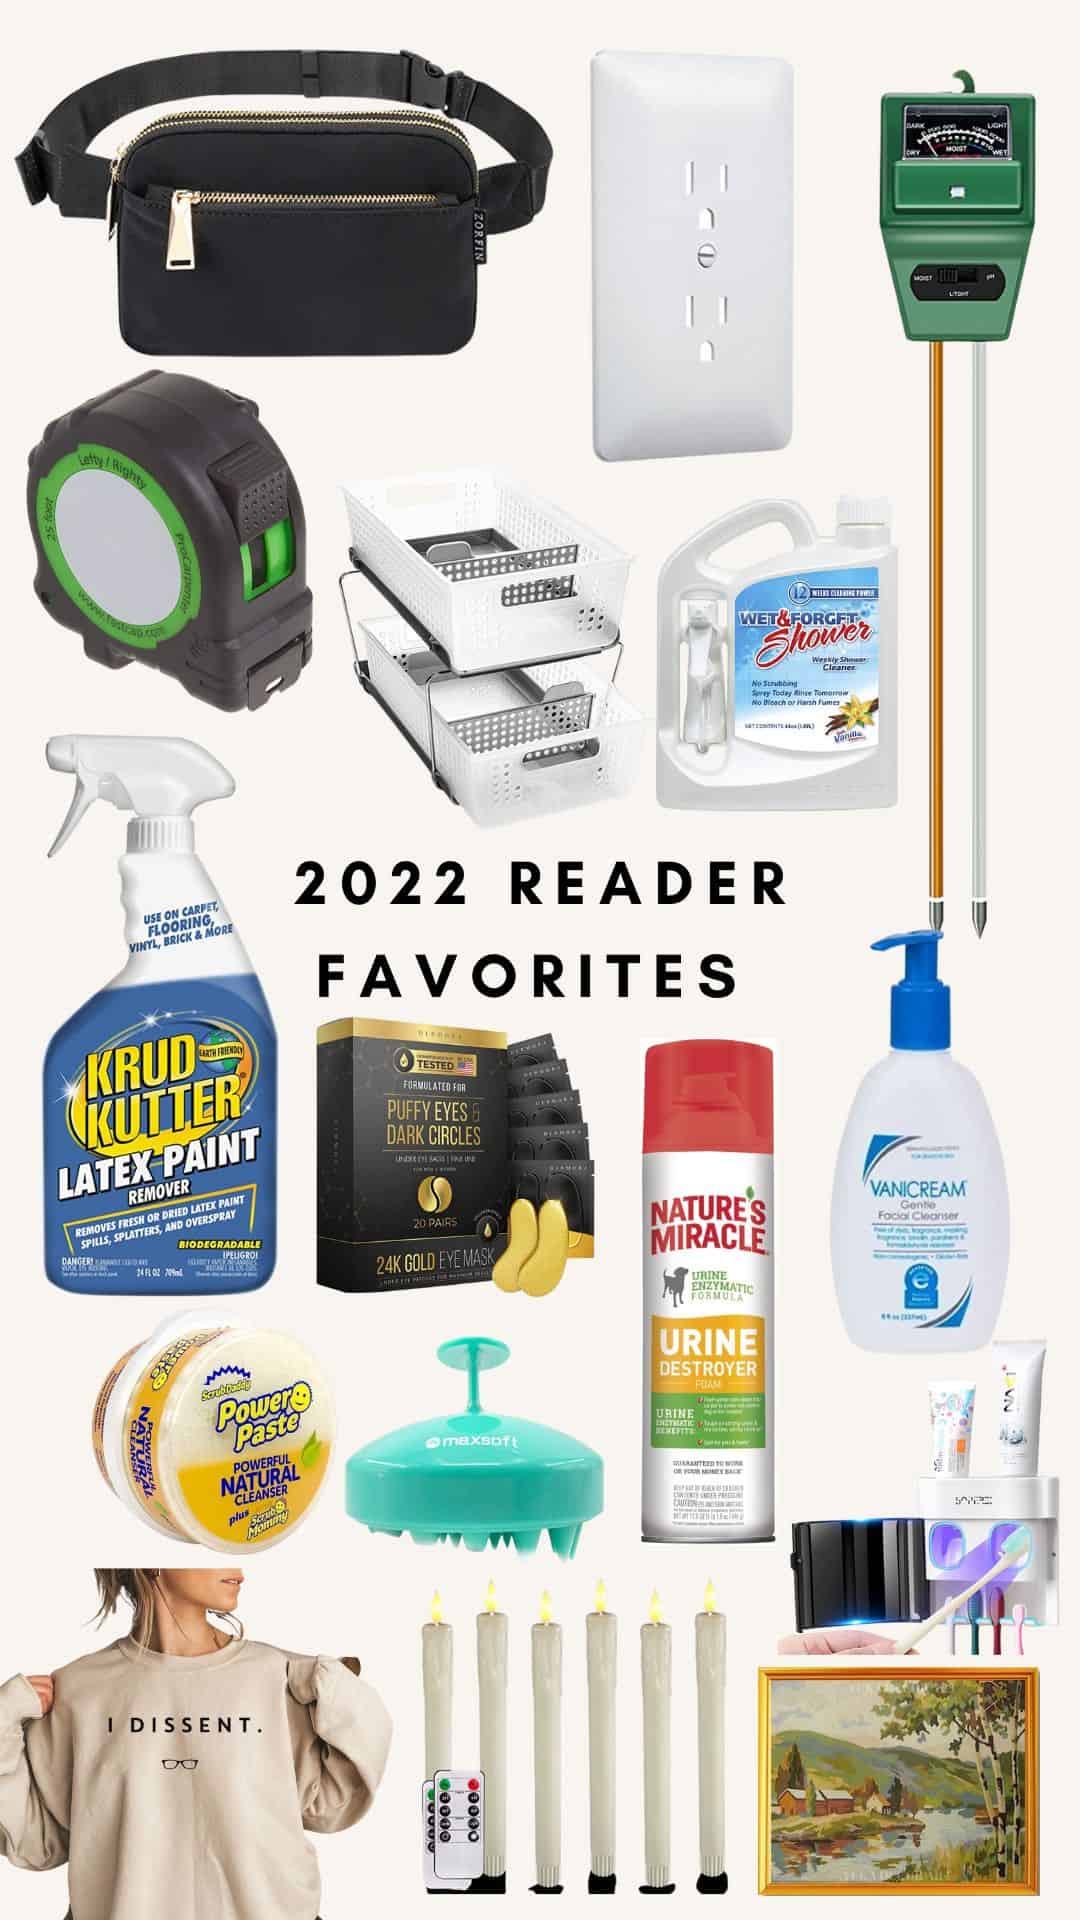 Readers’ Favorite Things of 2022